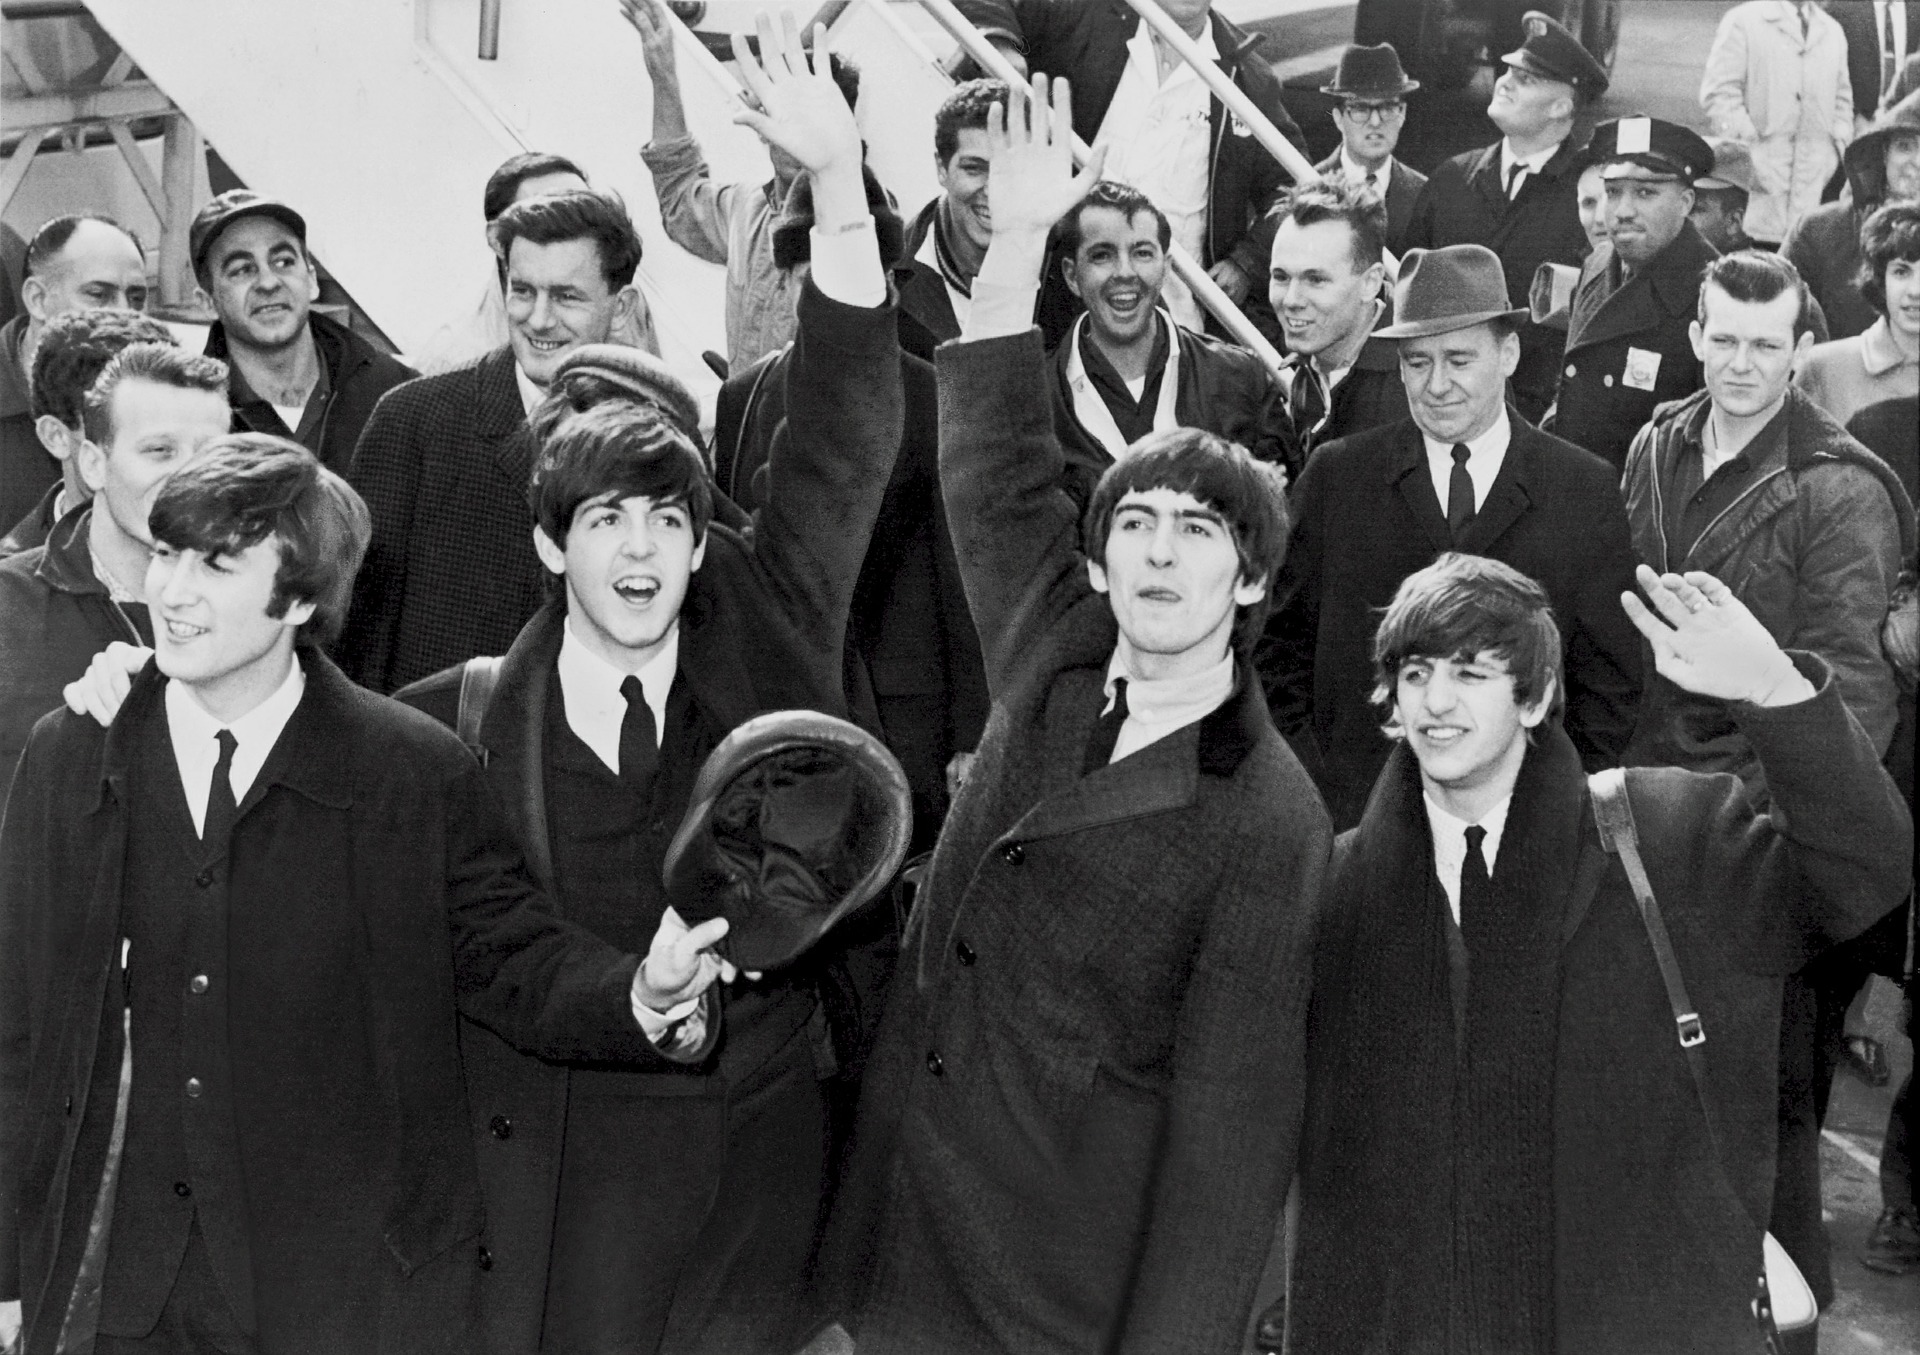 Schwarz-weiß Foto der Beatles.